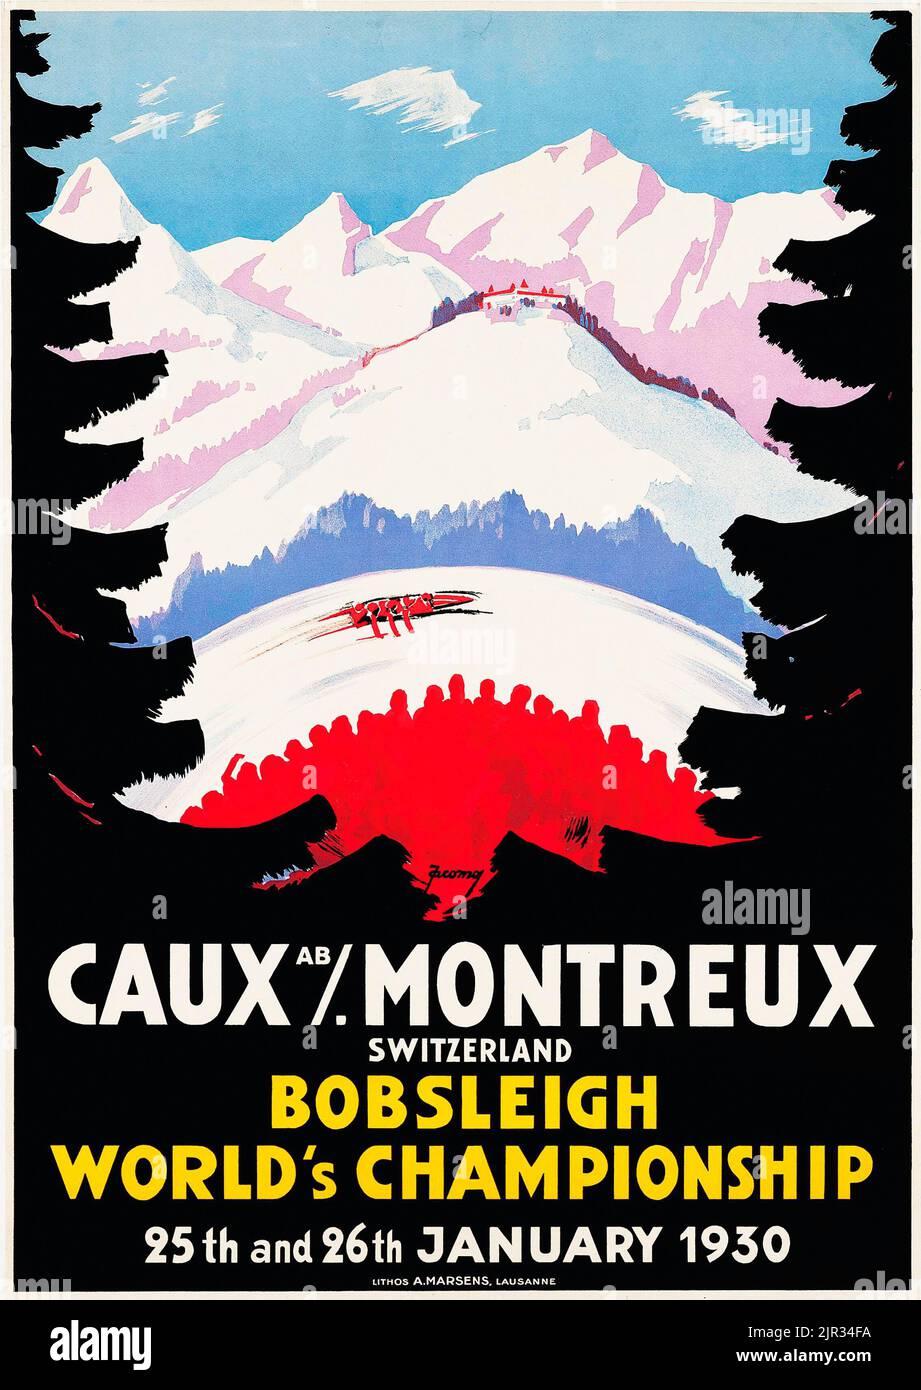 Vintage travel poster - Jacomo Müller - CAUX MONTREUX 1930 - Bobsleigh World's Championship. Suisse, Schweiz, Switzerland, Swiss. Alps. Stock Photo